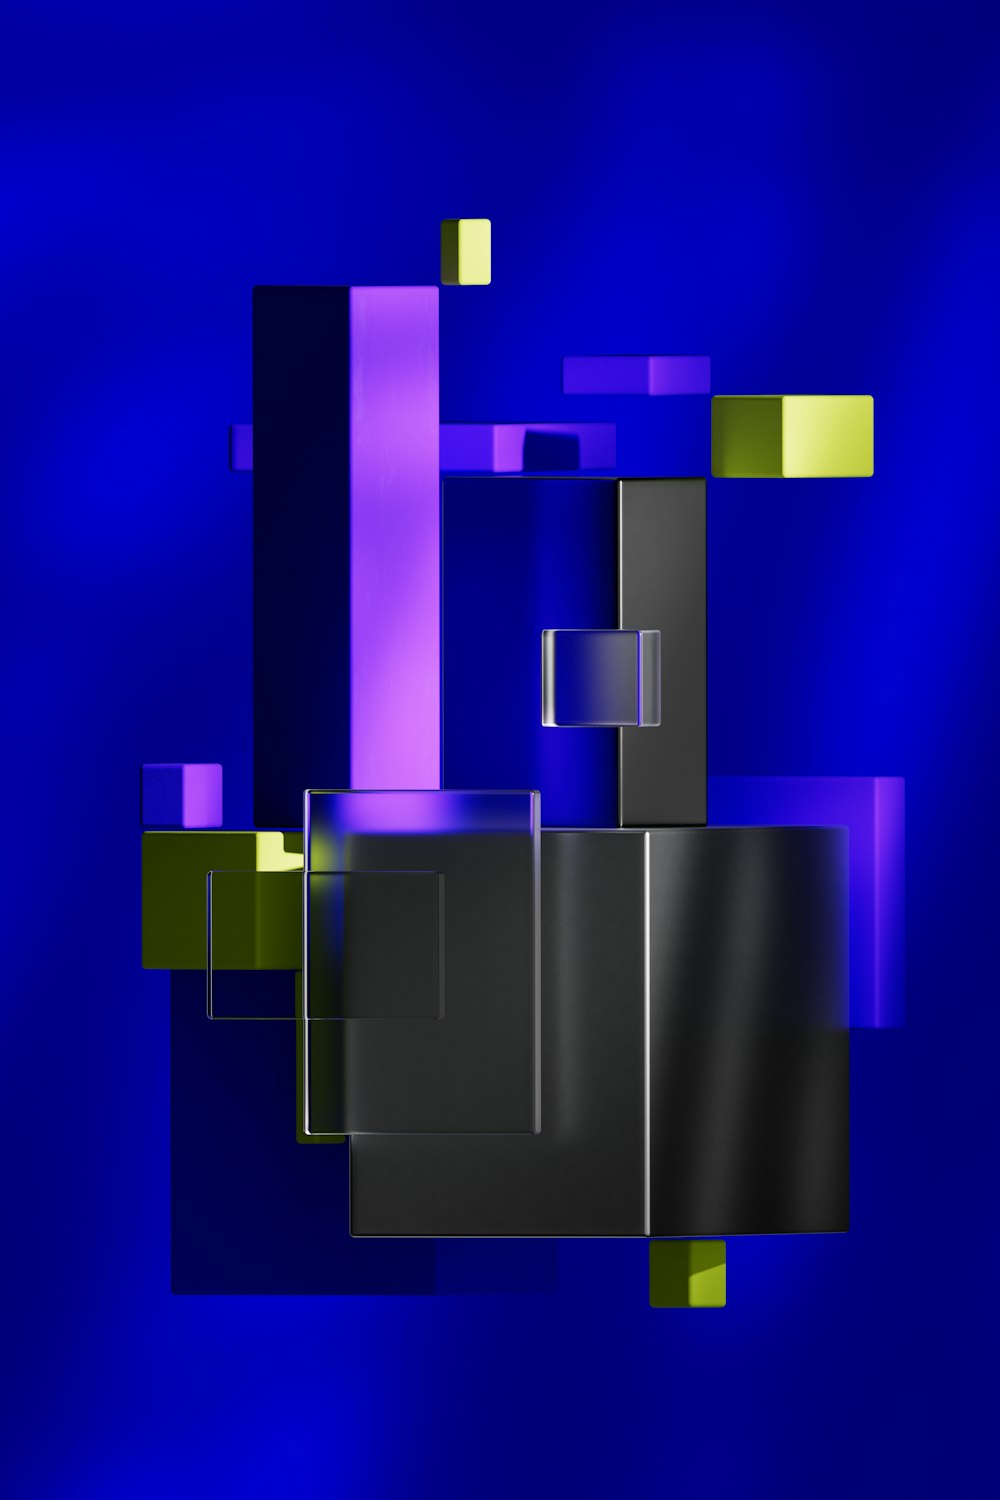 Un fondo abstracto azul y negro con cuadrados y rectángulos